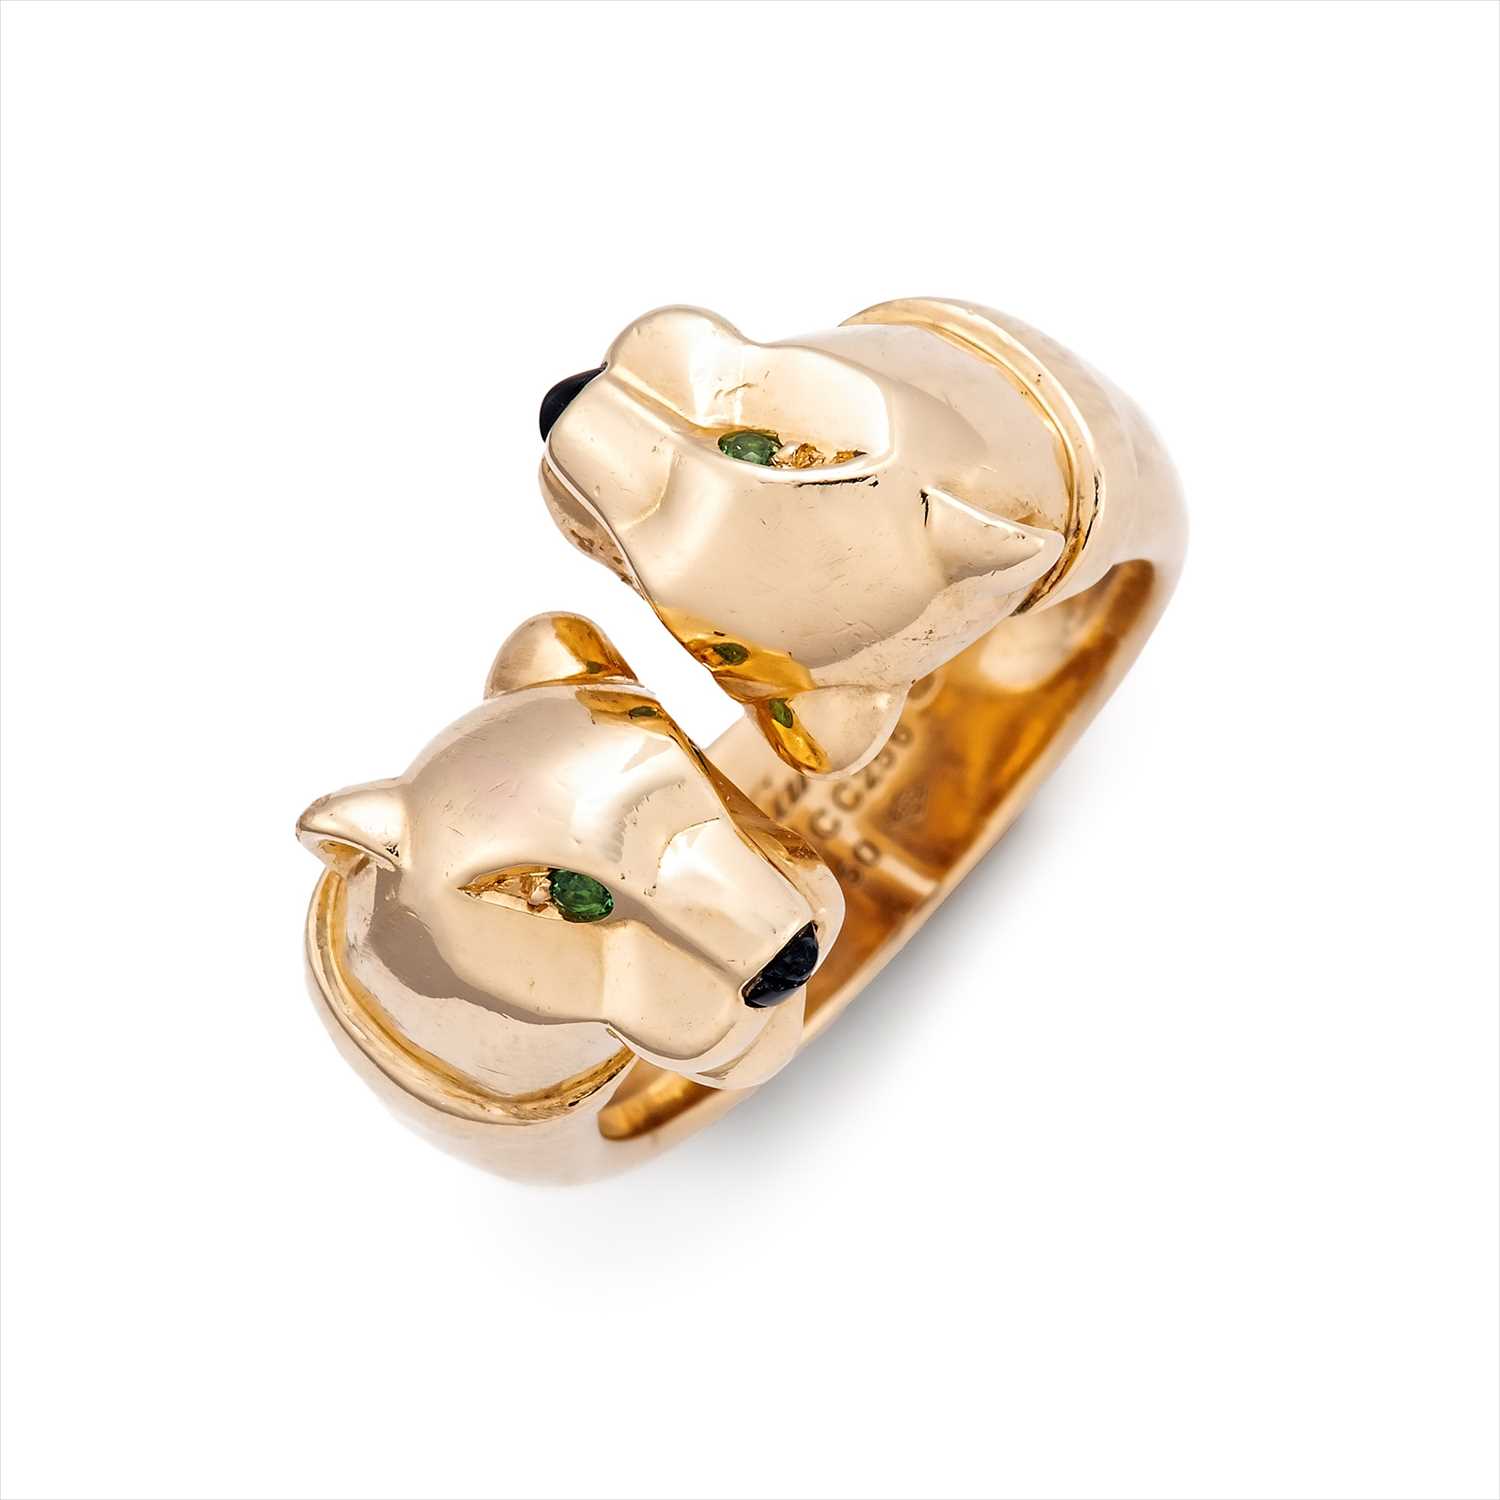 Lot 128 - Cartier - an 18ct gold onyx and tsavorite garnet Panthère ring.